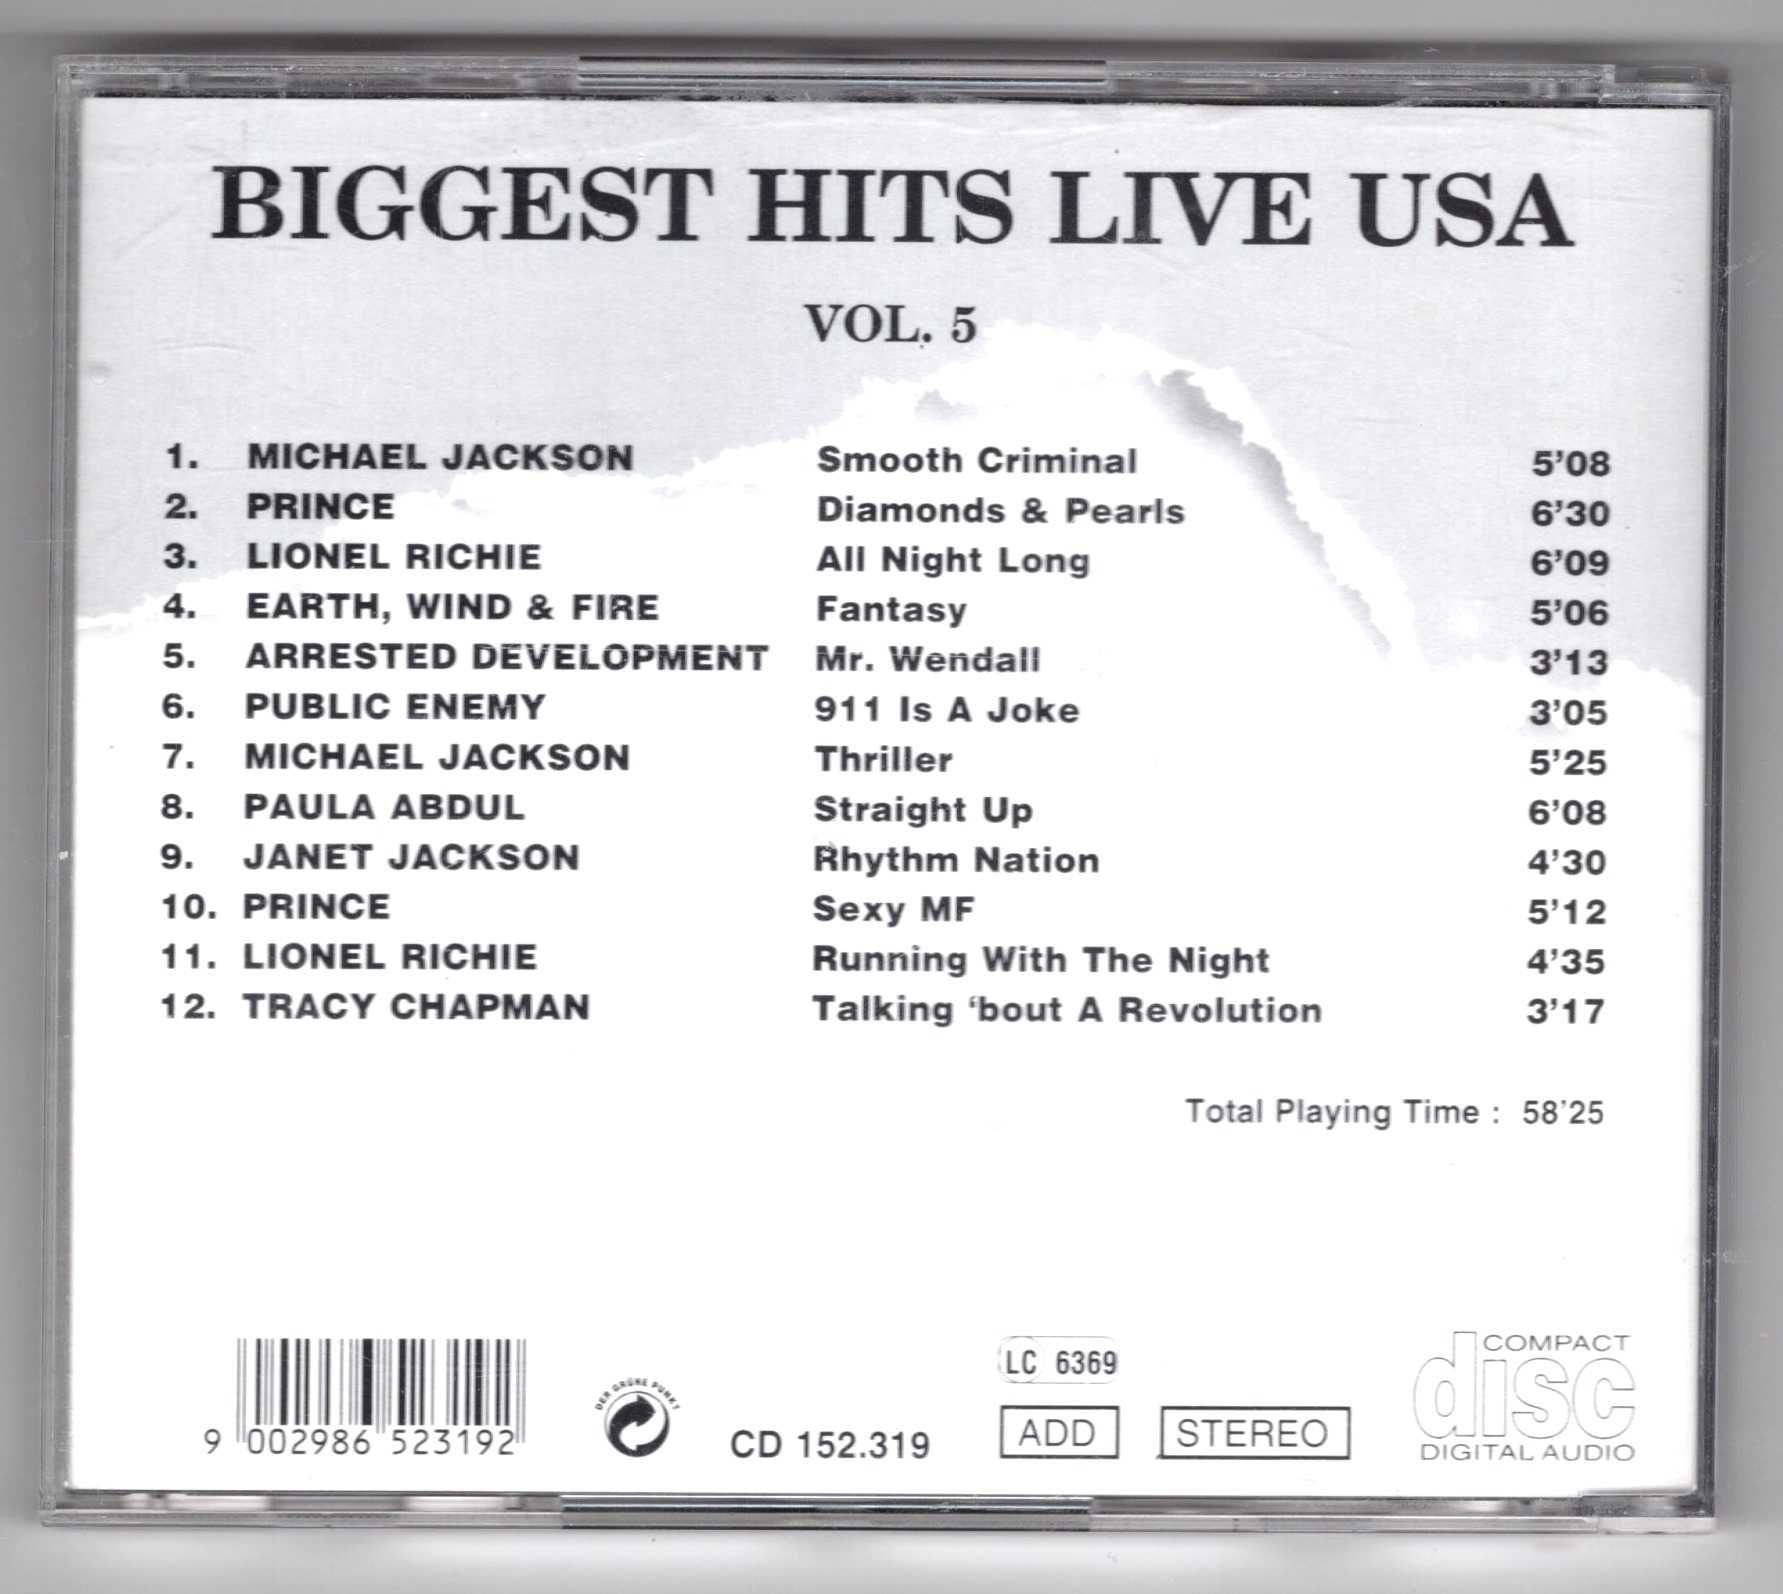 Biggest Hits Live USA Vol. 5 (CD)  Michael Jackson, Prince